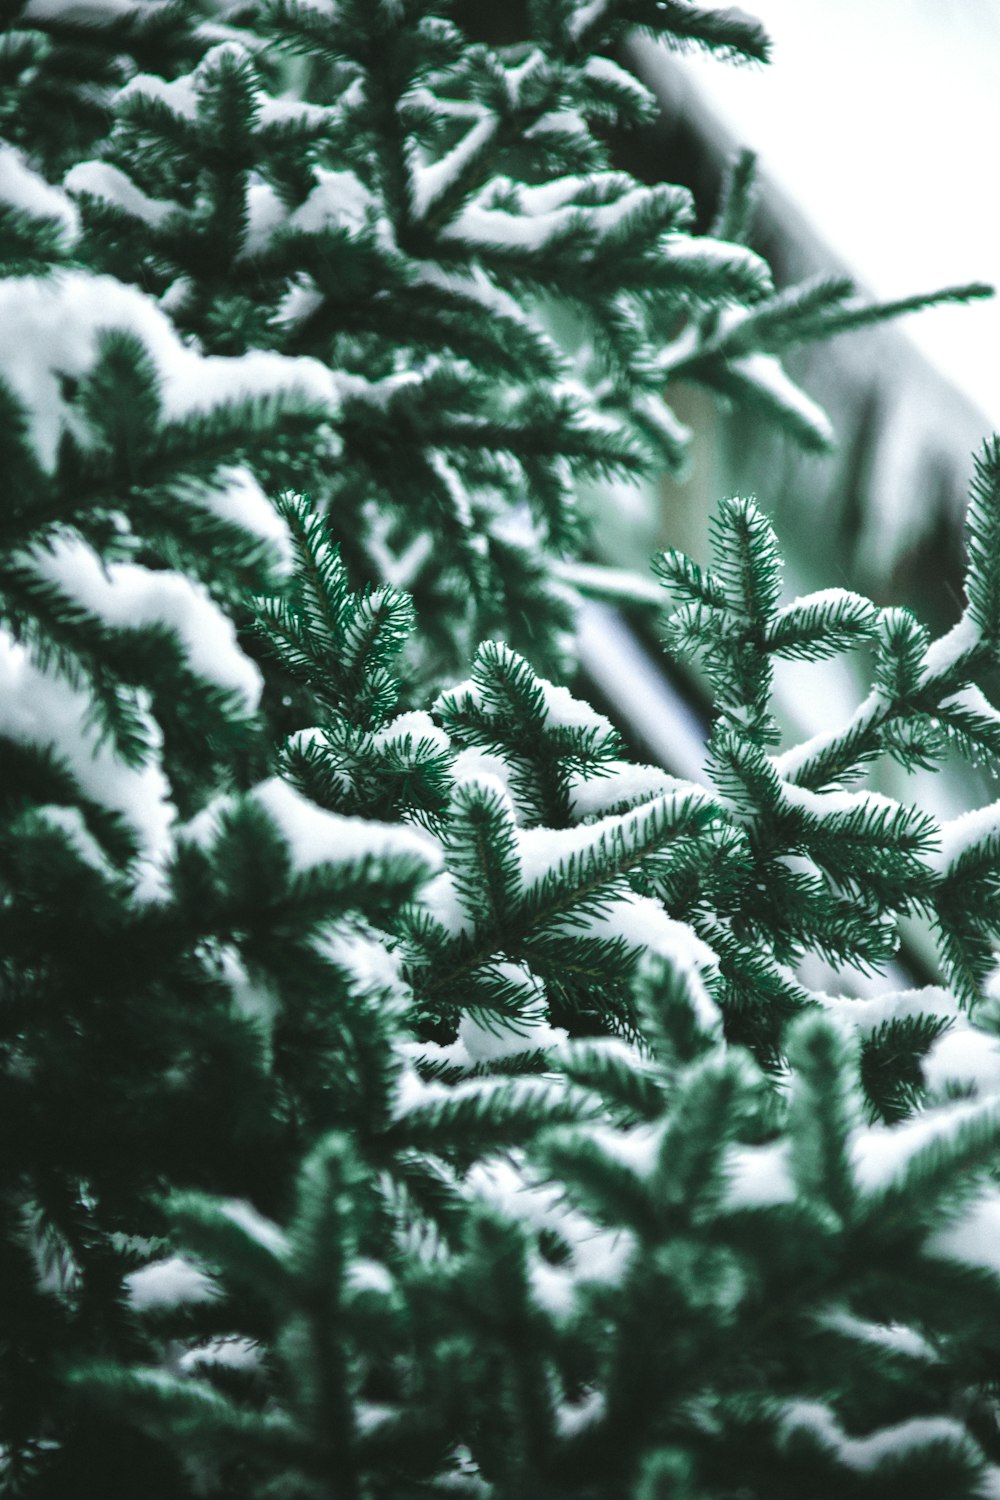 fotografia em close-up de pinheiros verdes cobertos de neve